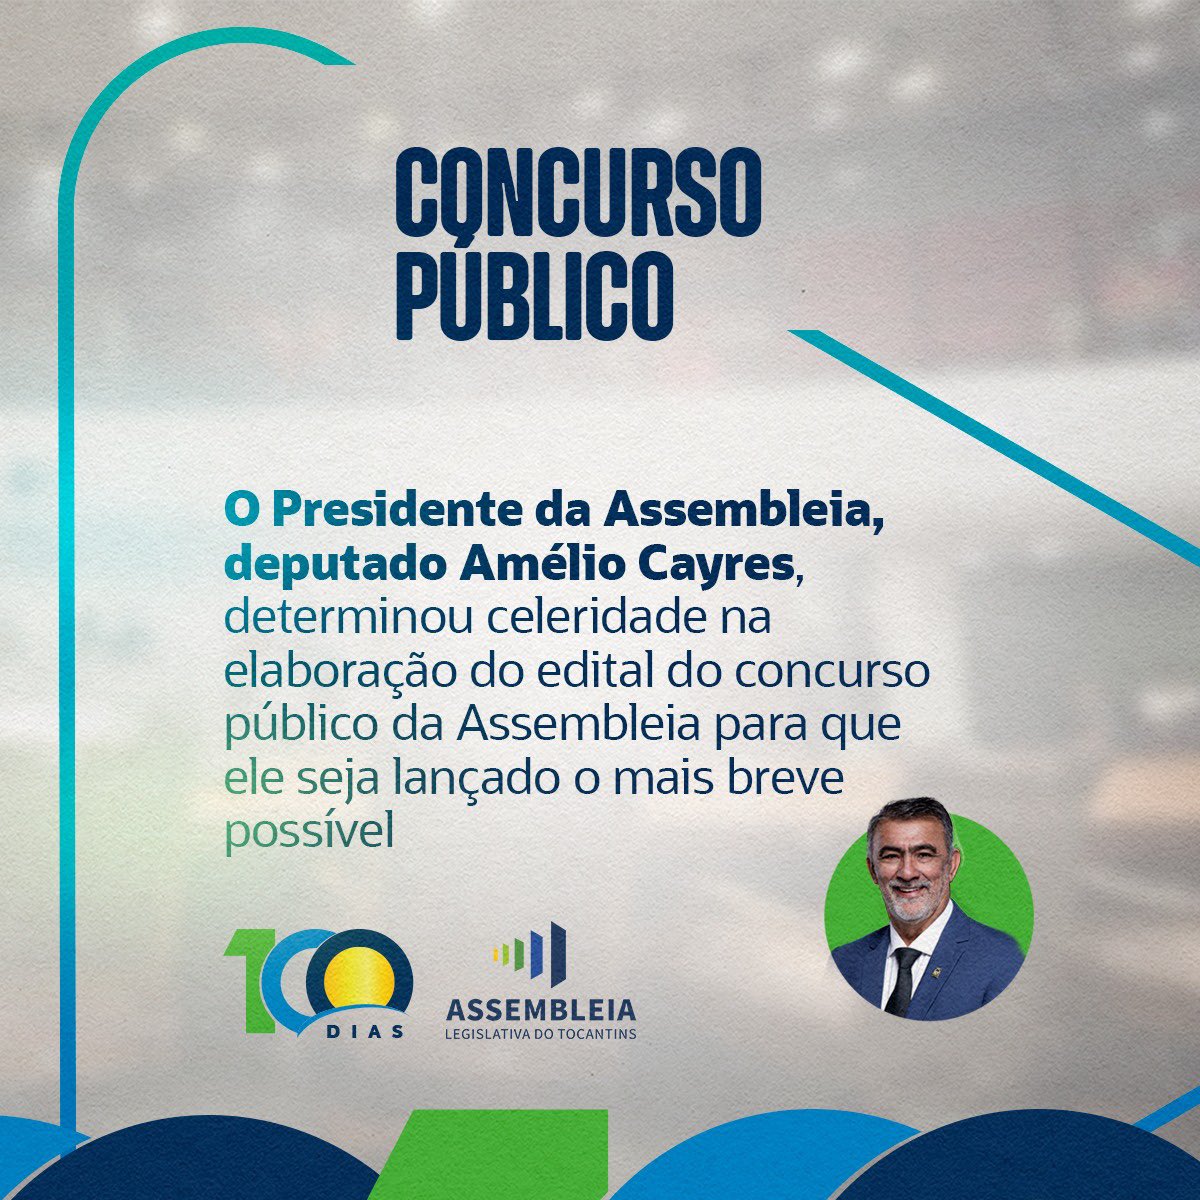 O concurso público da Assembleia foi um dos assuntos apresentado pelo Presidente da Casa, o Deputado Amélio Cayres, nesses #100Dias de legislatura.